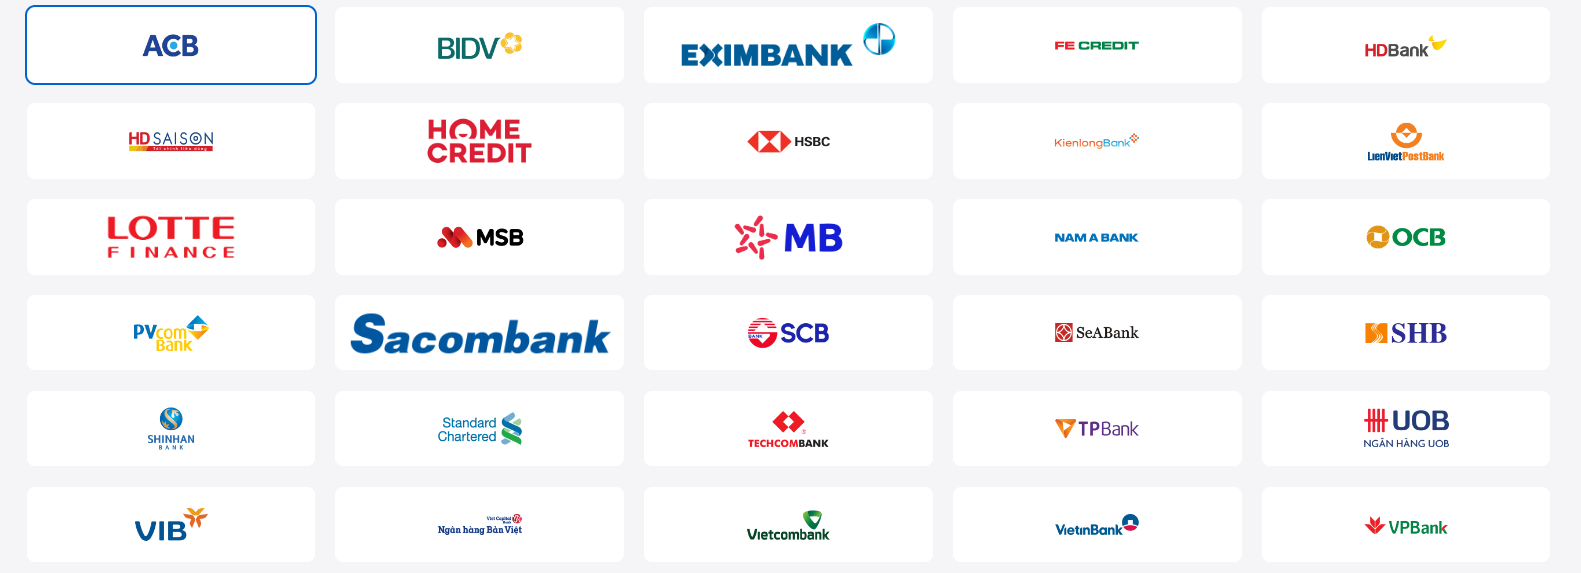 ShopDunk liên kết với rất nhiều ngân hàng, mang tới cho bạn đa dạng tùy chọn khi thanh toán trả góp